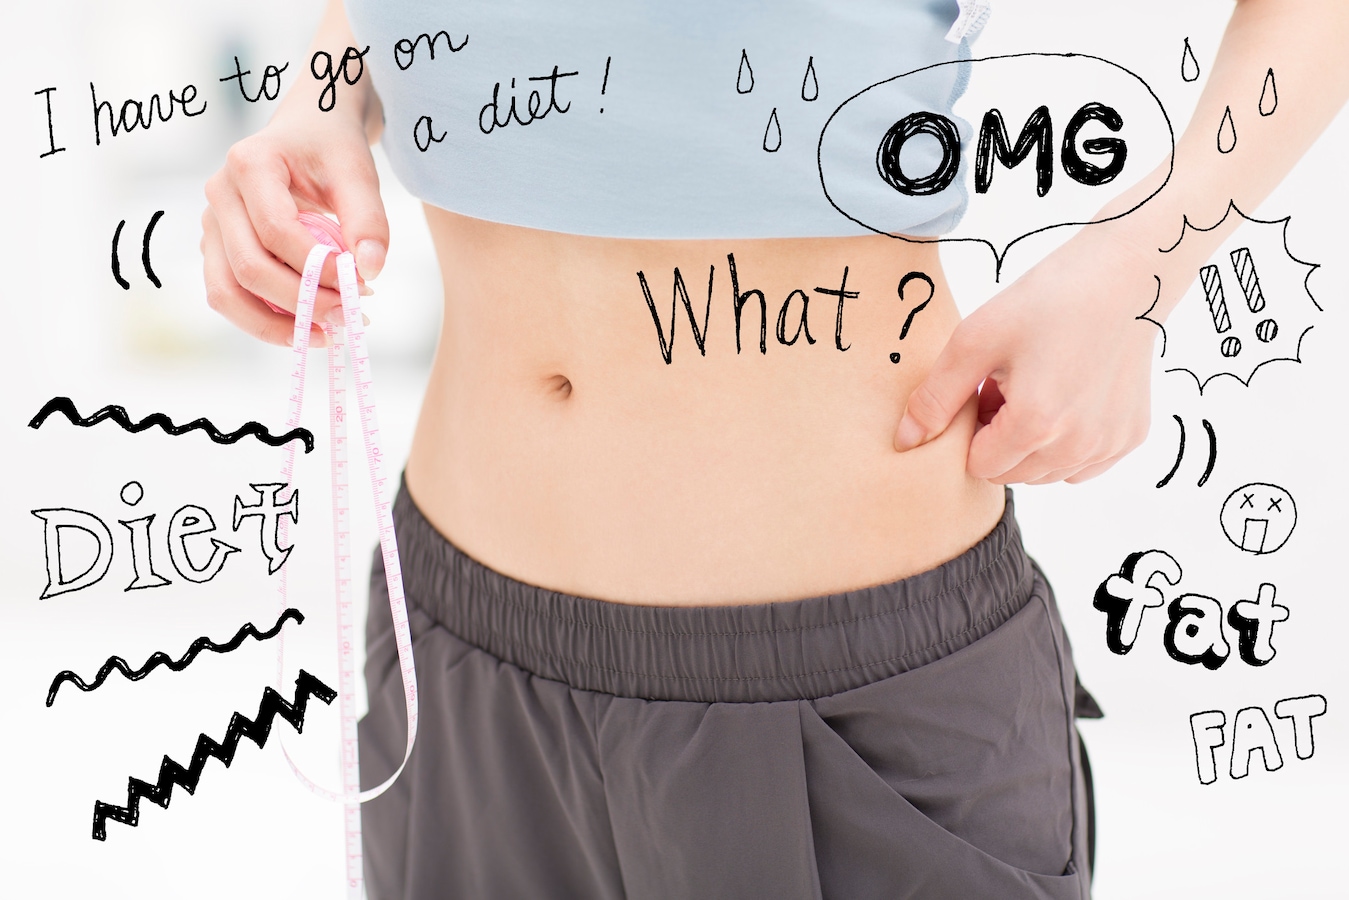 どんどん太る女性10代 20代のリアルおデブ習慣top10 ダイエットの基本 All About